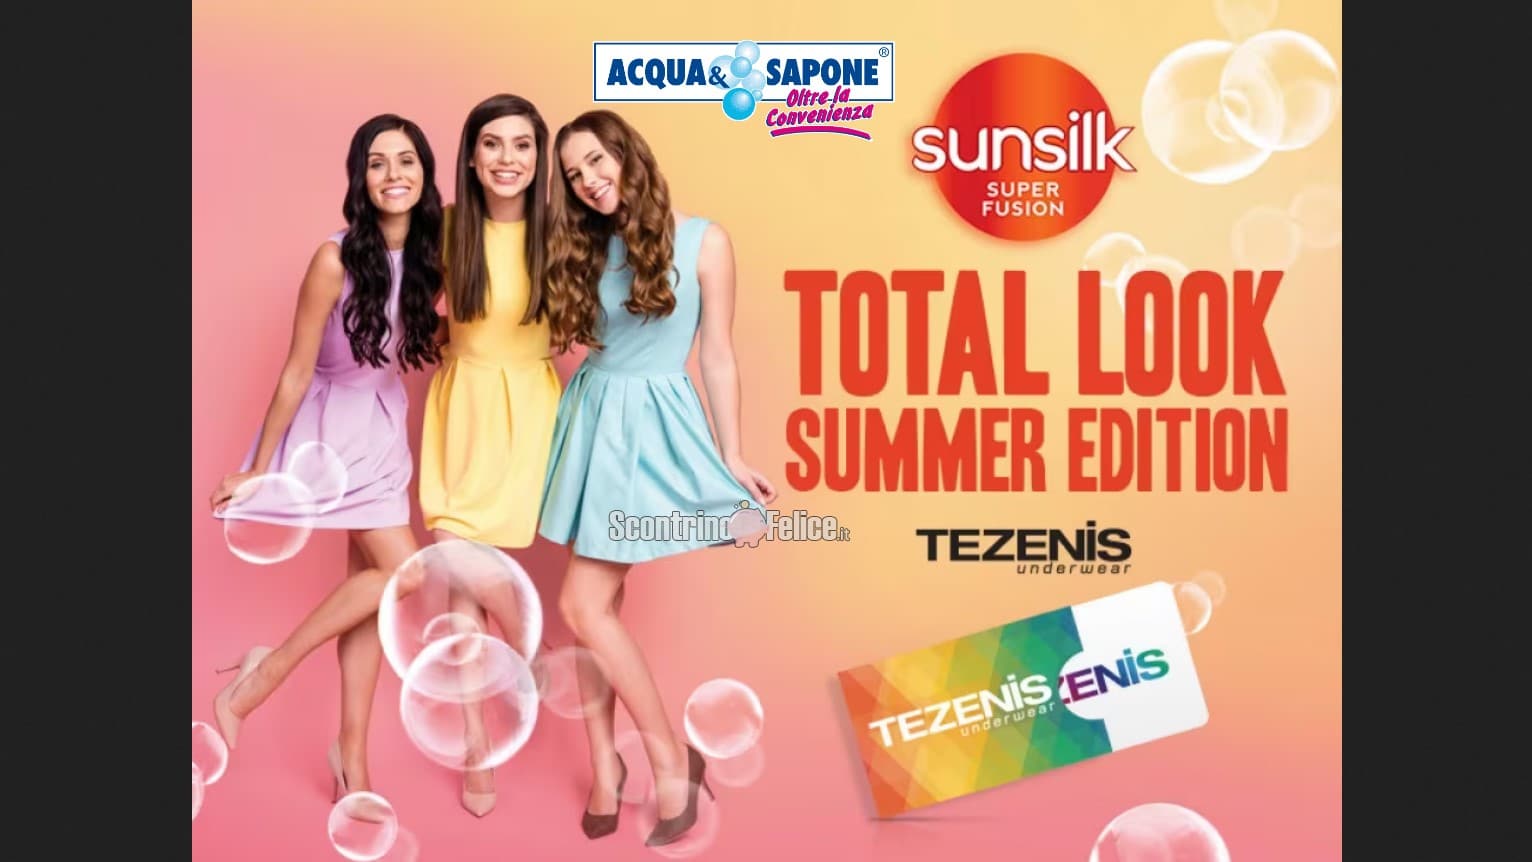 Concorso Sunsilk Total Look Summer Edition da Acqua e Sapone: vinci gift card Tezenis